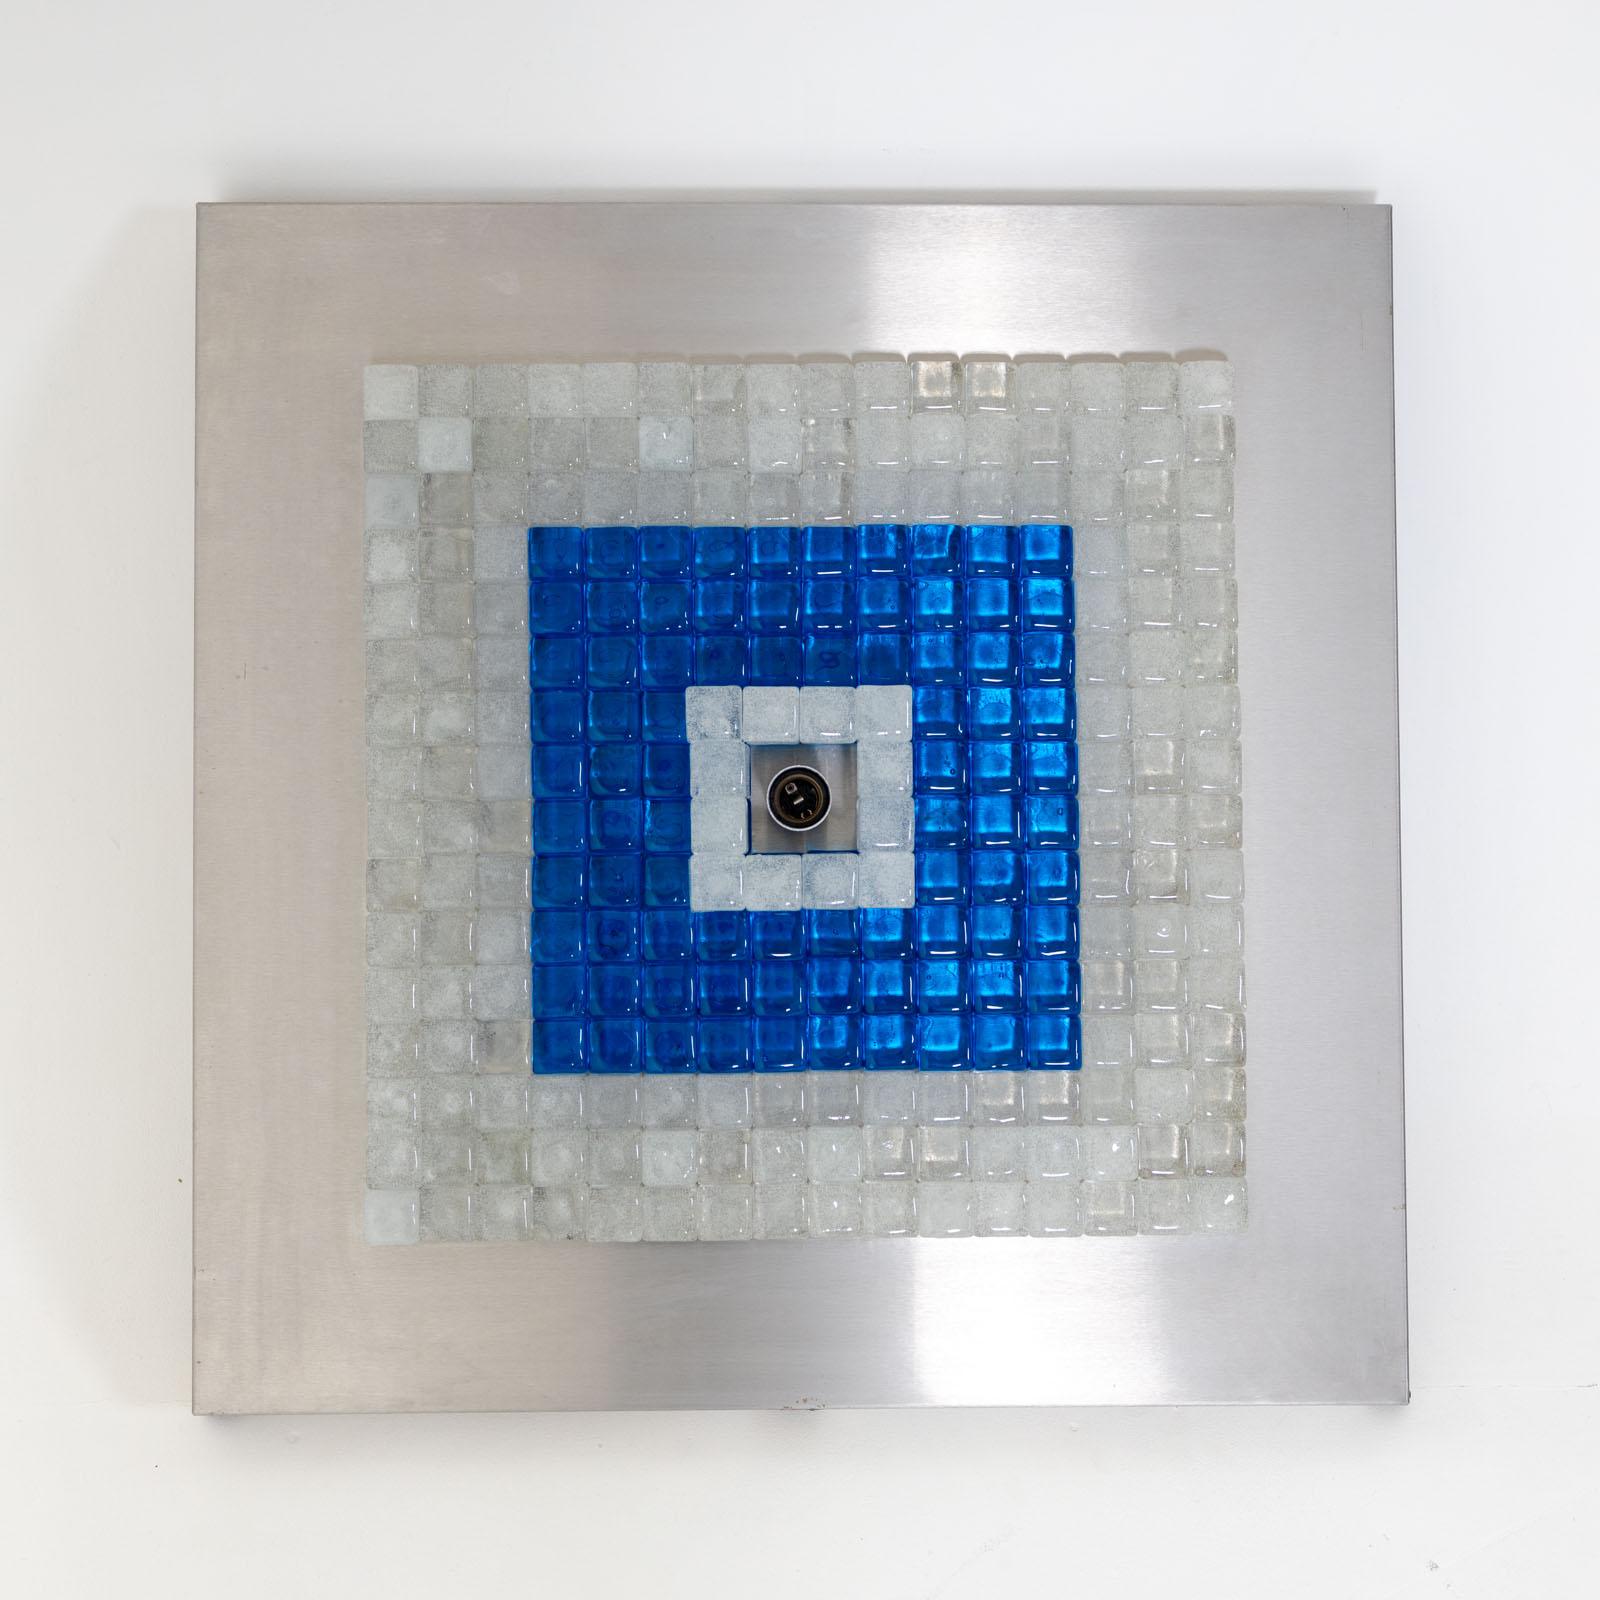 Plafonnier ou applique murale carrée conçue par Albano Poli pour Poliarte dans les années 1970. La lampe se compose d'un cadre métallique avec de plus petits carrés de verre bleu et transparent groupés autour d'une douille centrale.